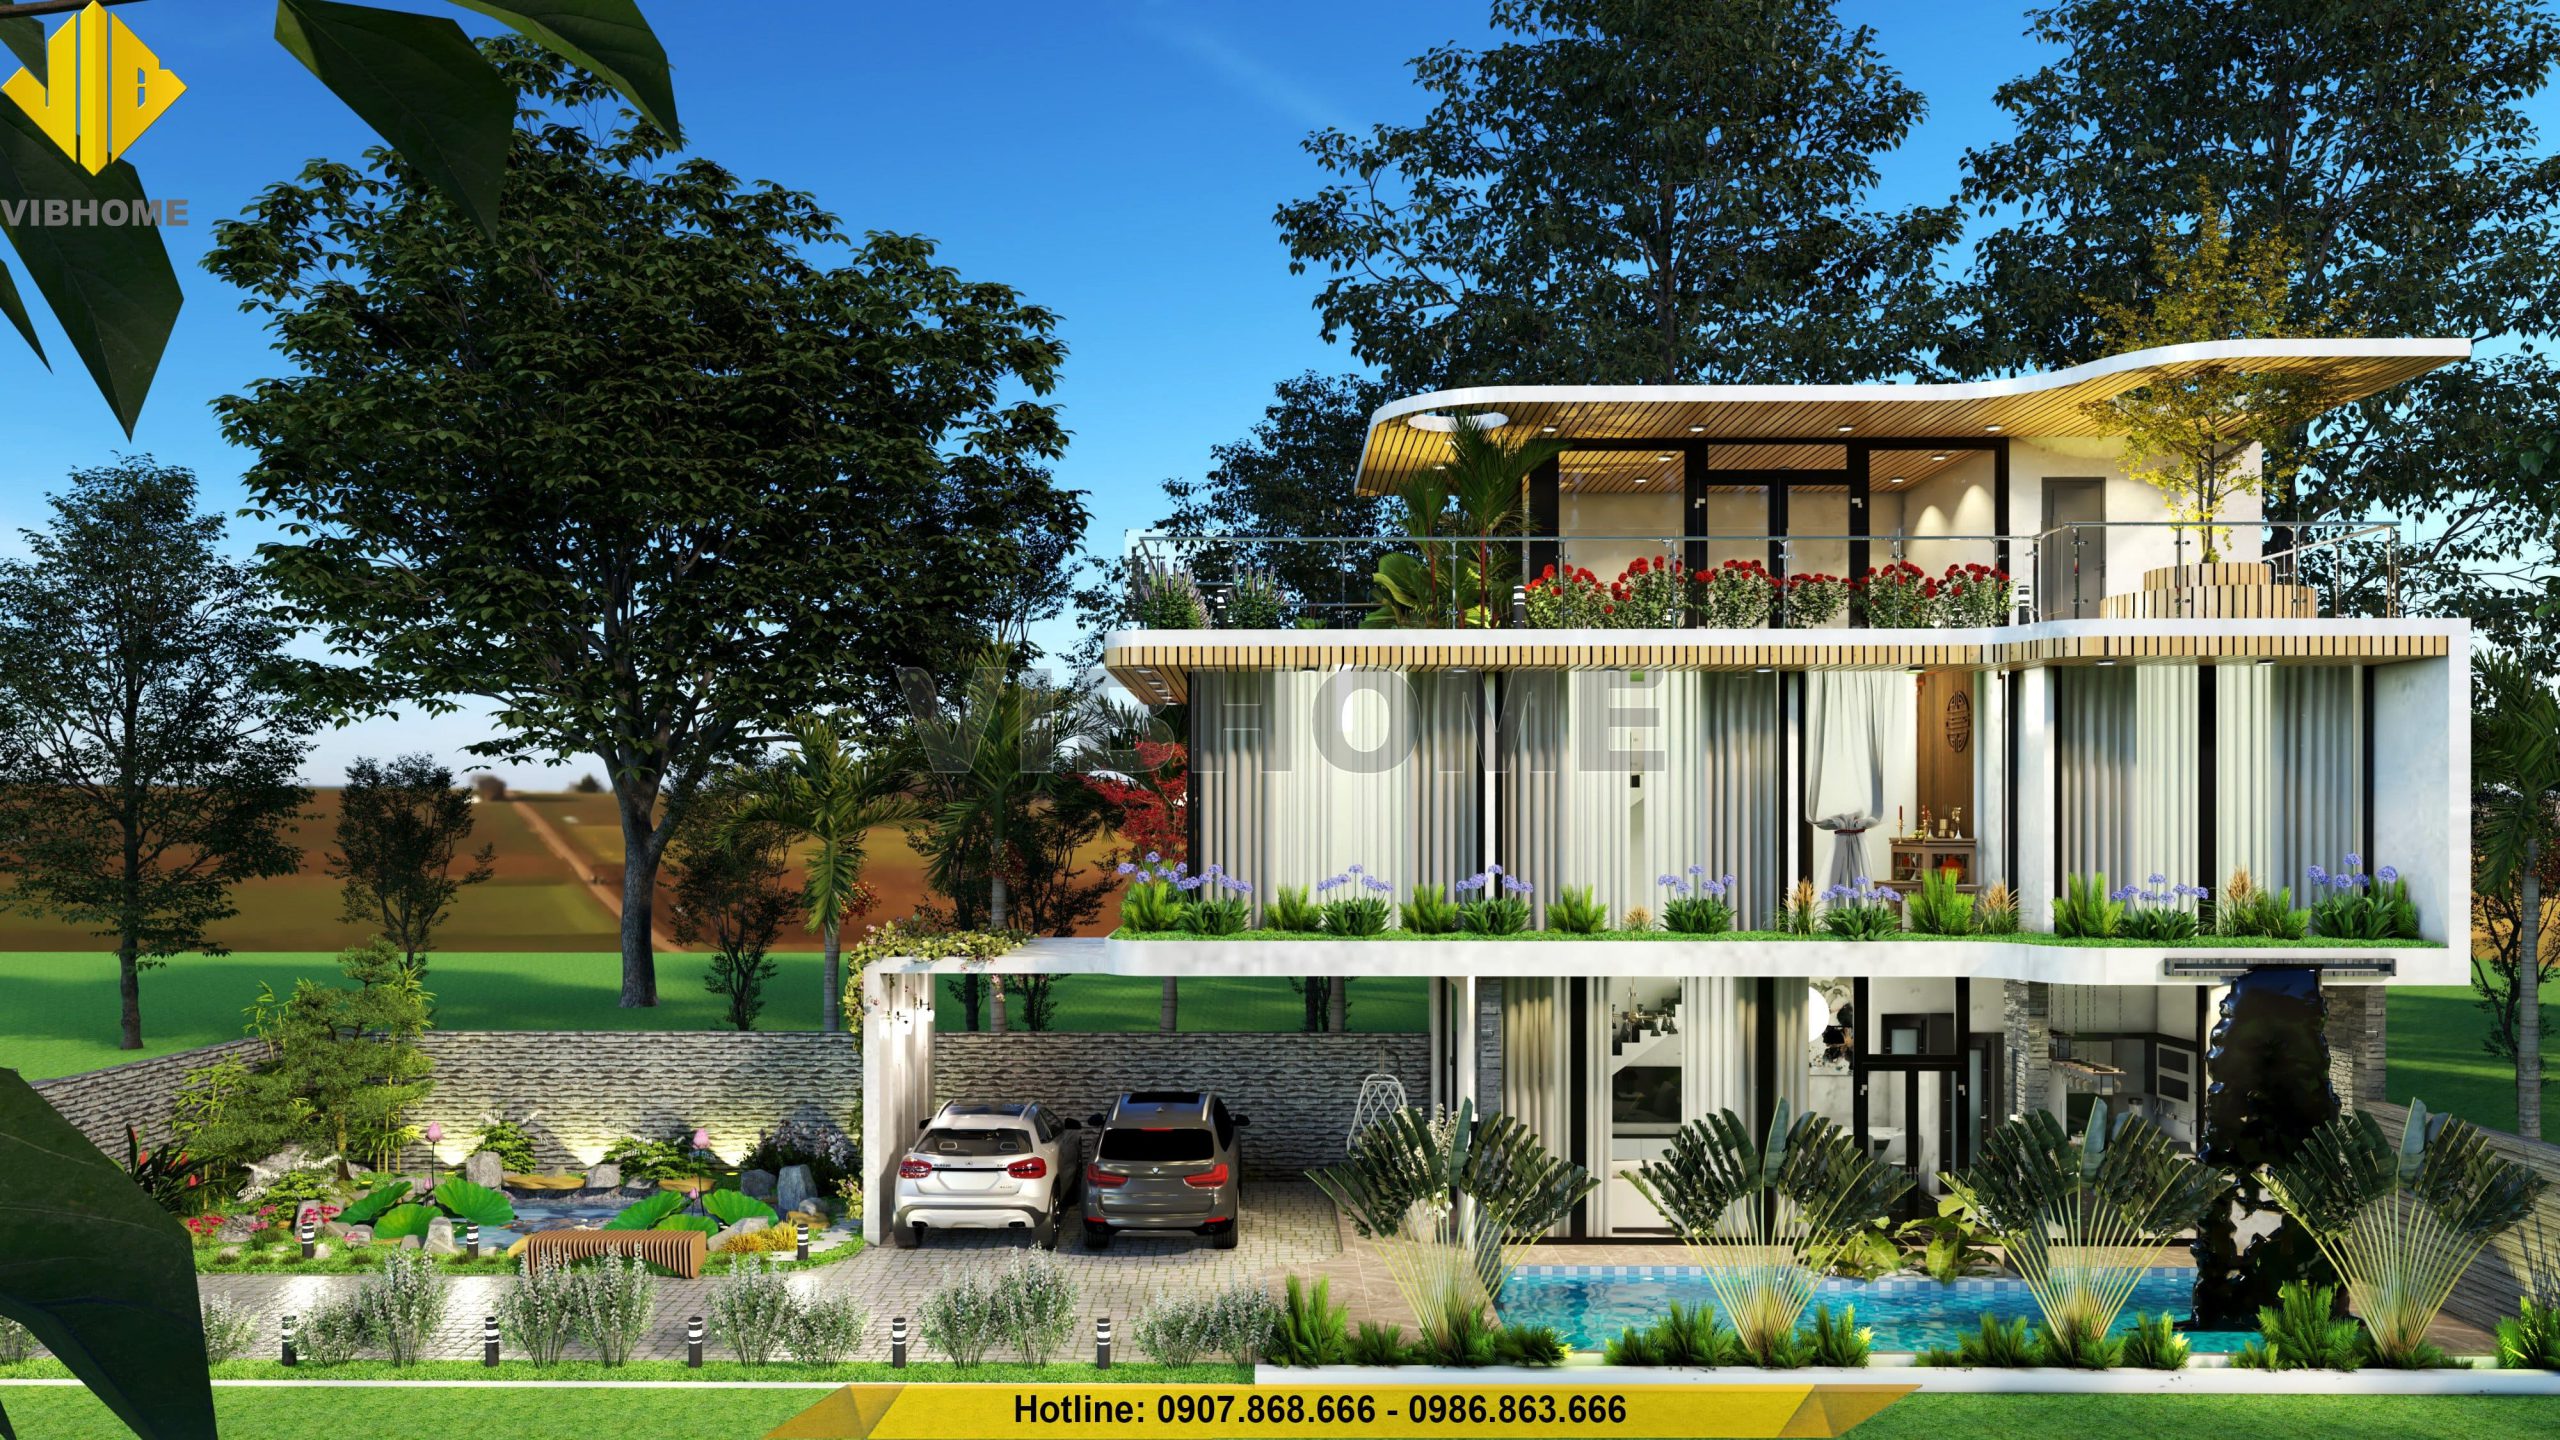 10 mẫu thiết kế villa nghỉ dưỡng rất đáng cho đại gia tham khảo